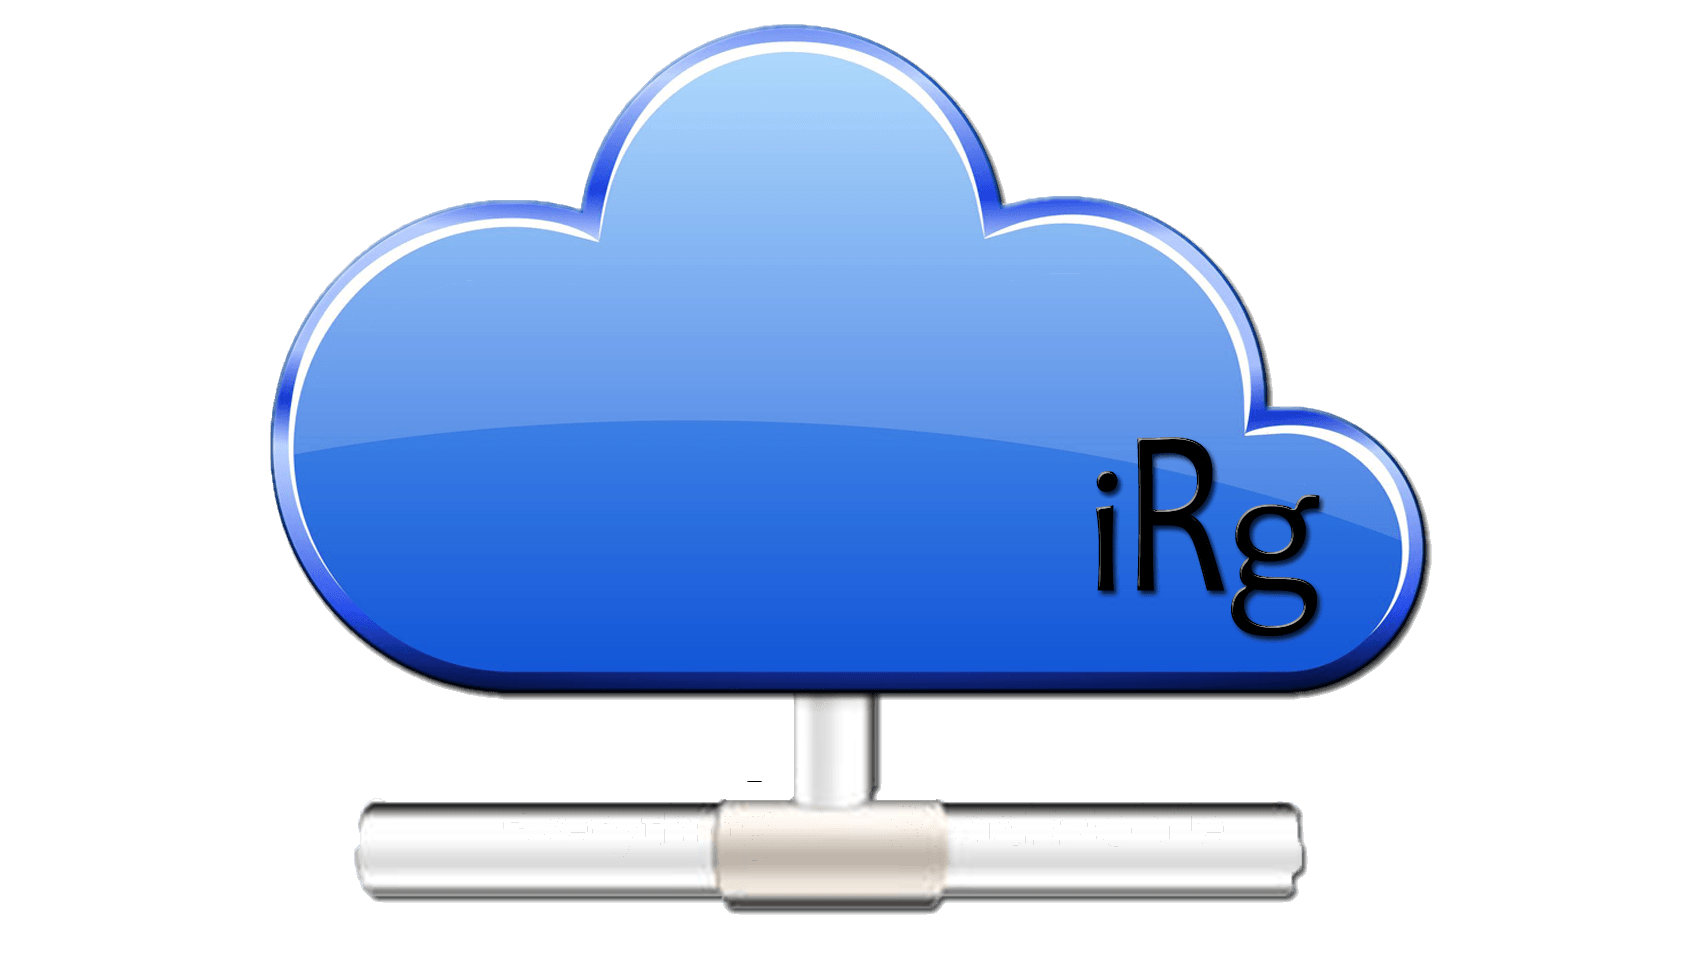 IRG Logo - IRG Marketing | Mobile Marketing | Website Design | Mobile Apps ...